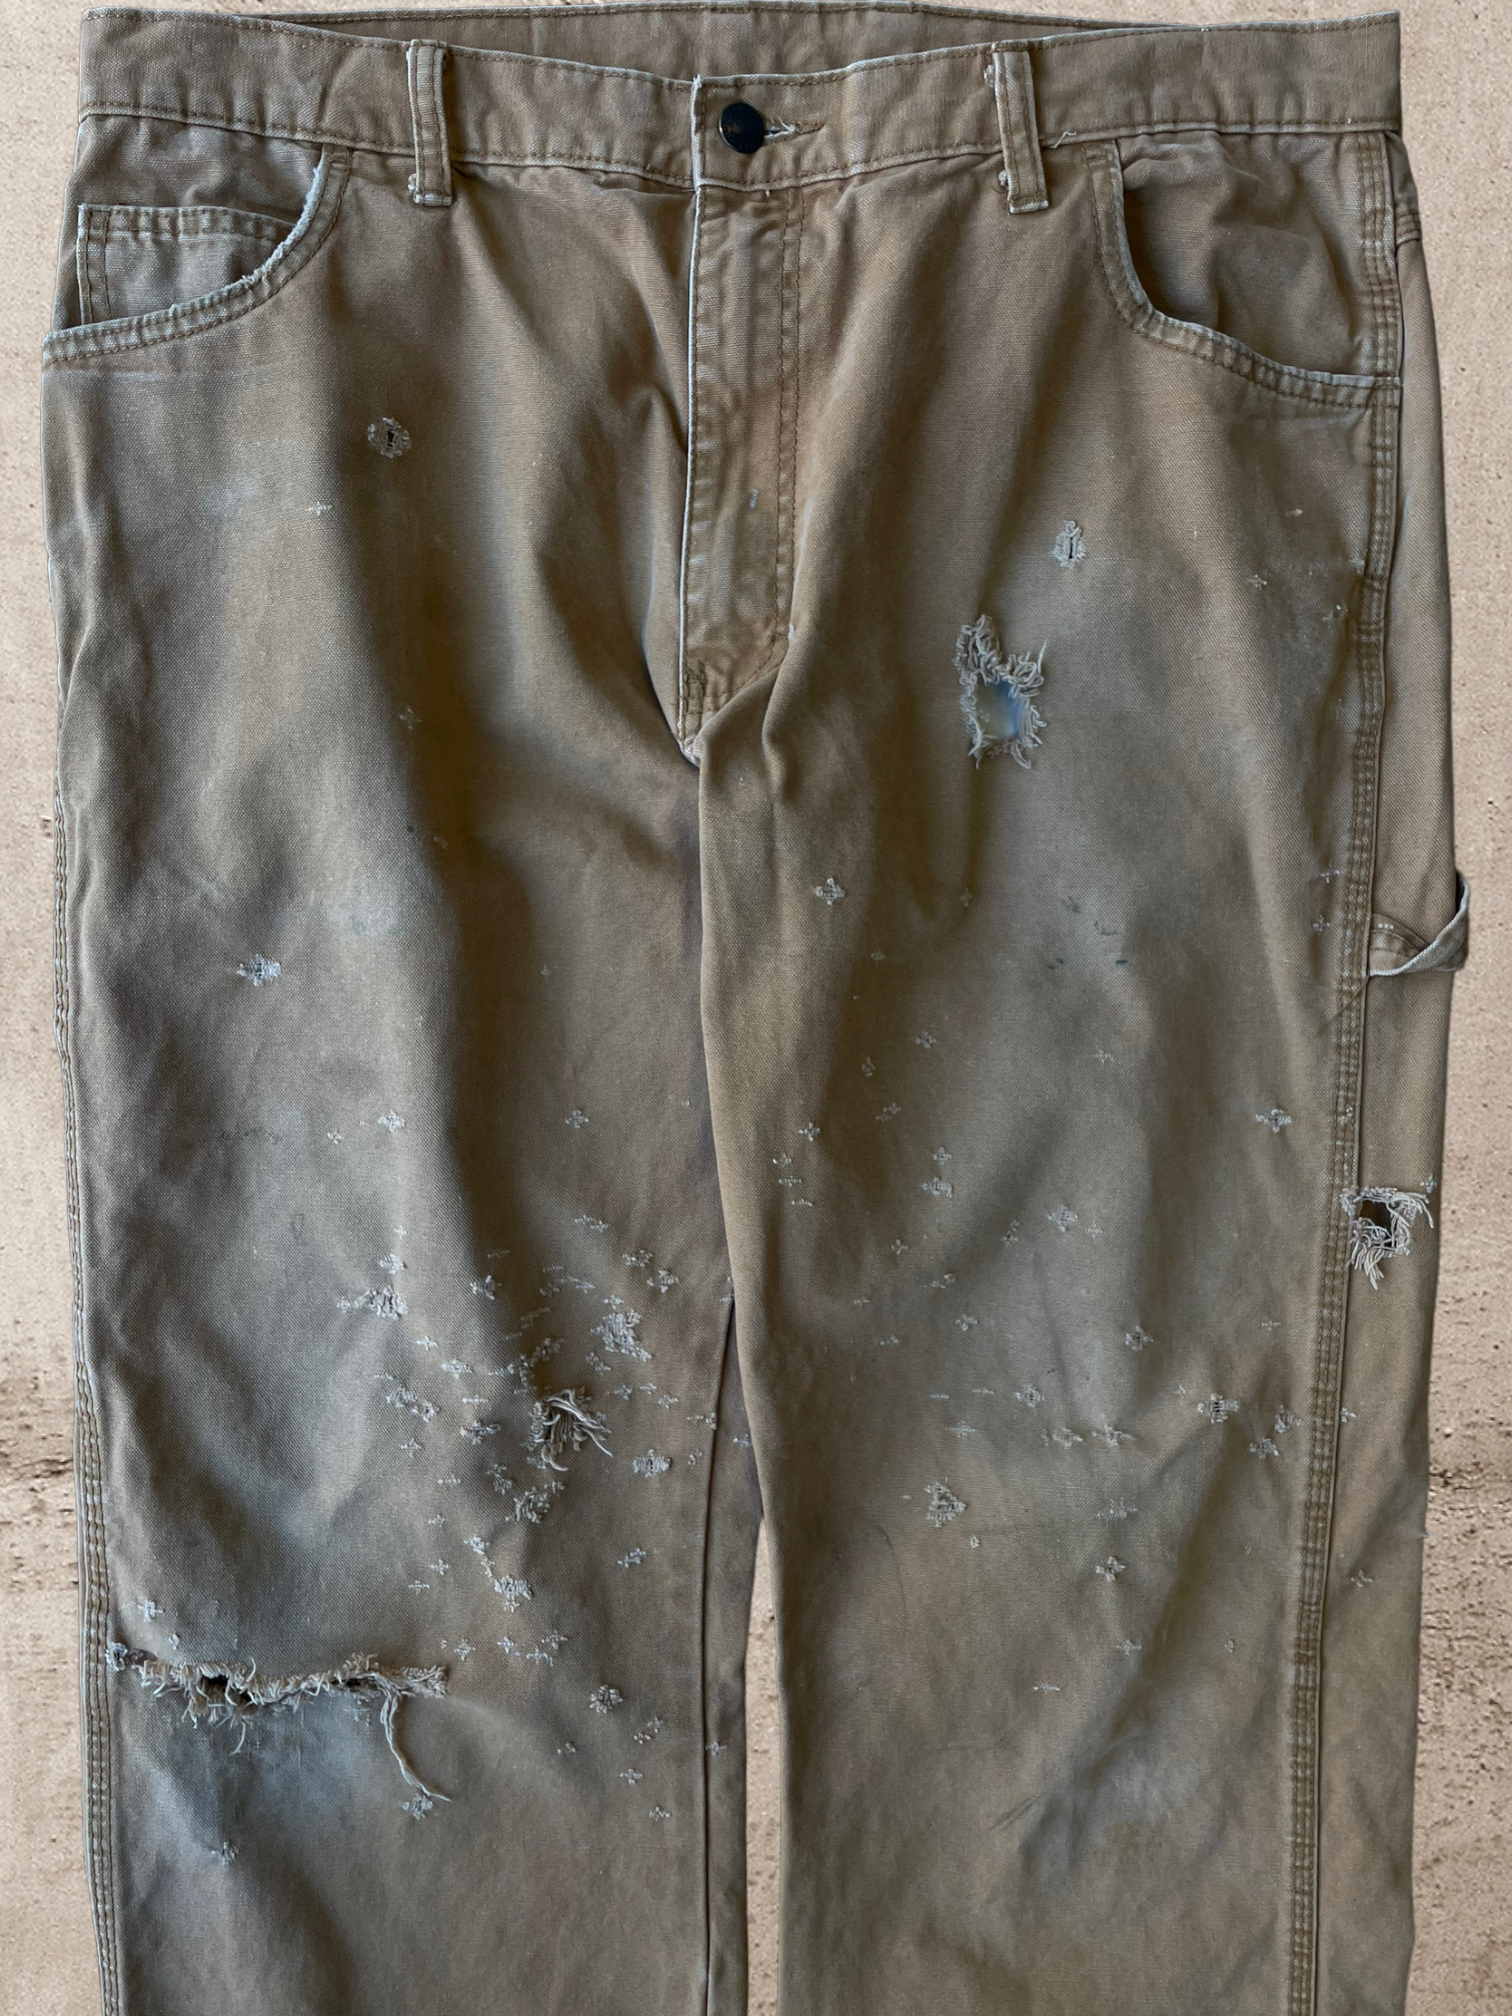 Vintage Dickies Distressed Carpenter Pants - 36x30